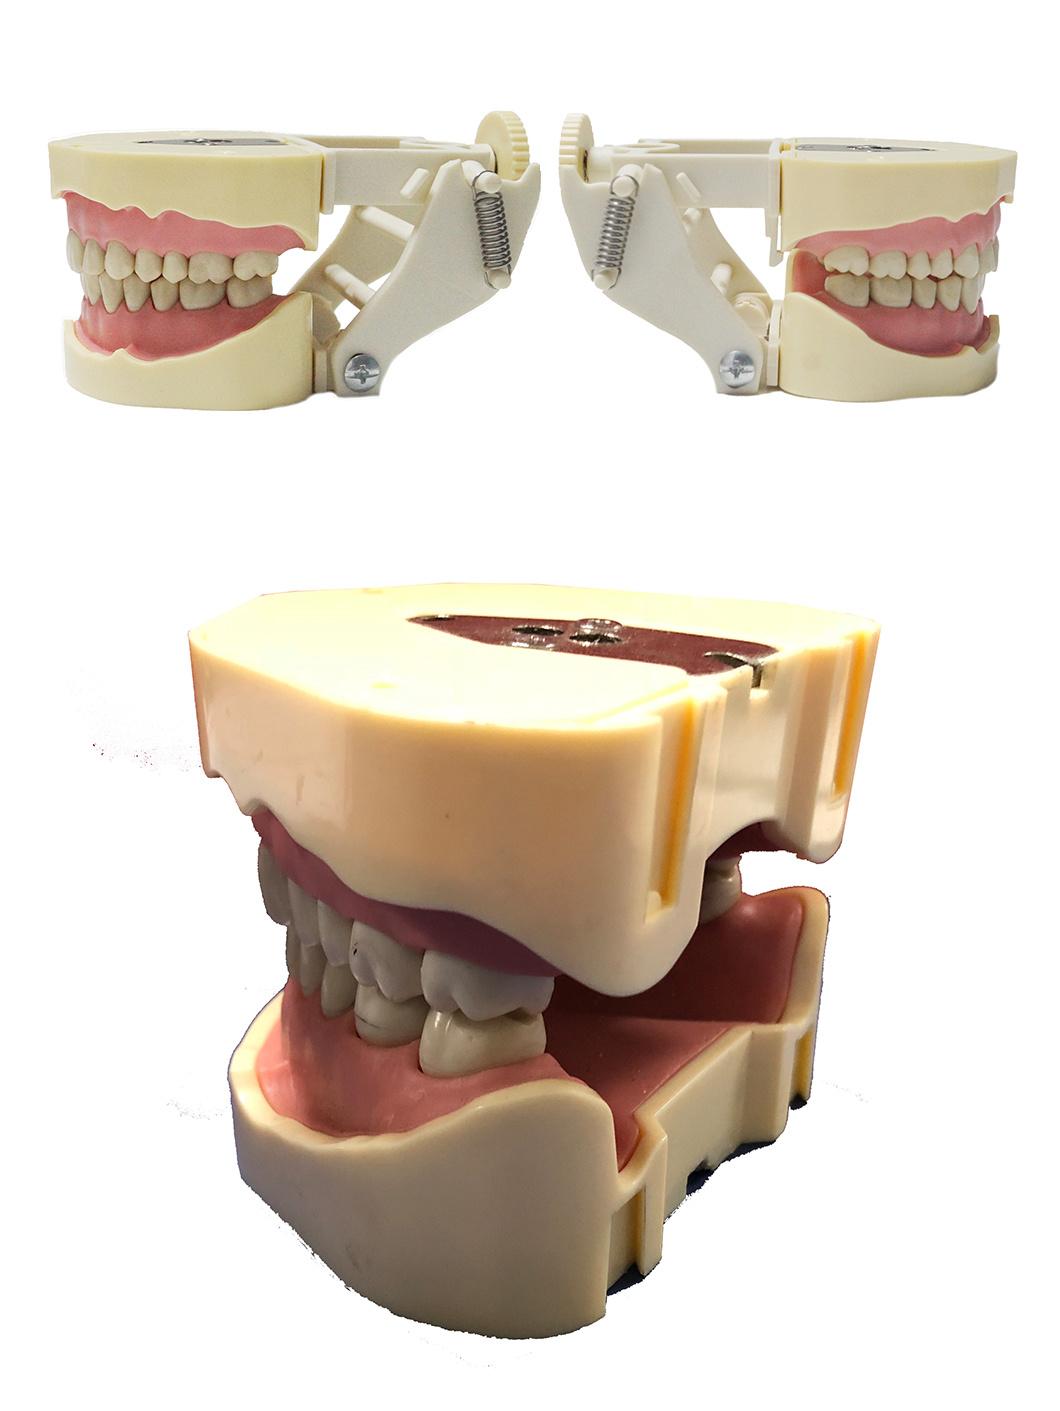 Dental Teaching Model Dental Phantom Head Manikin Simulator